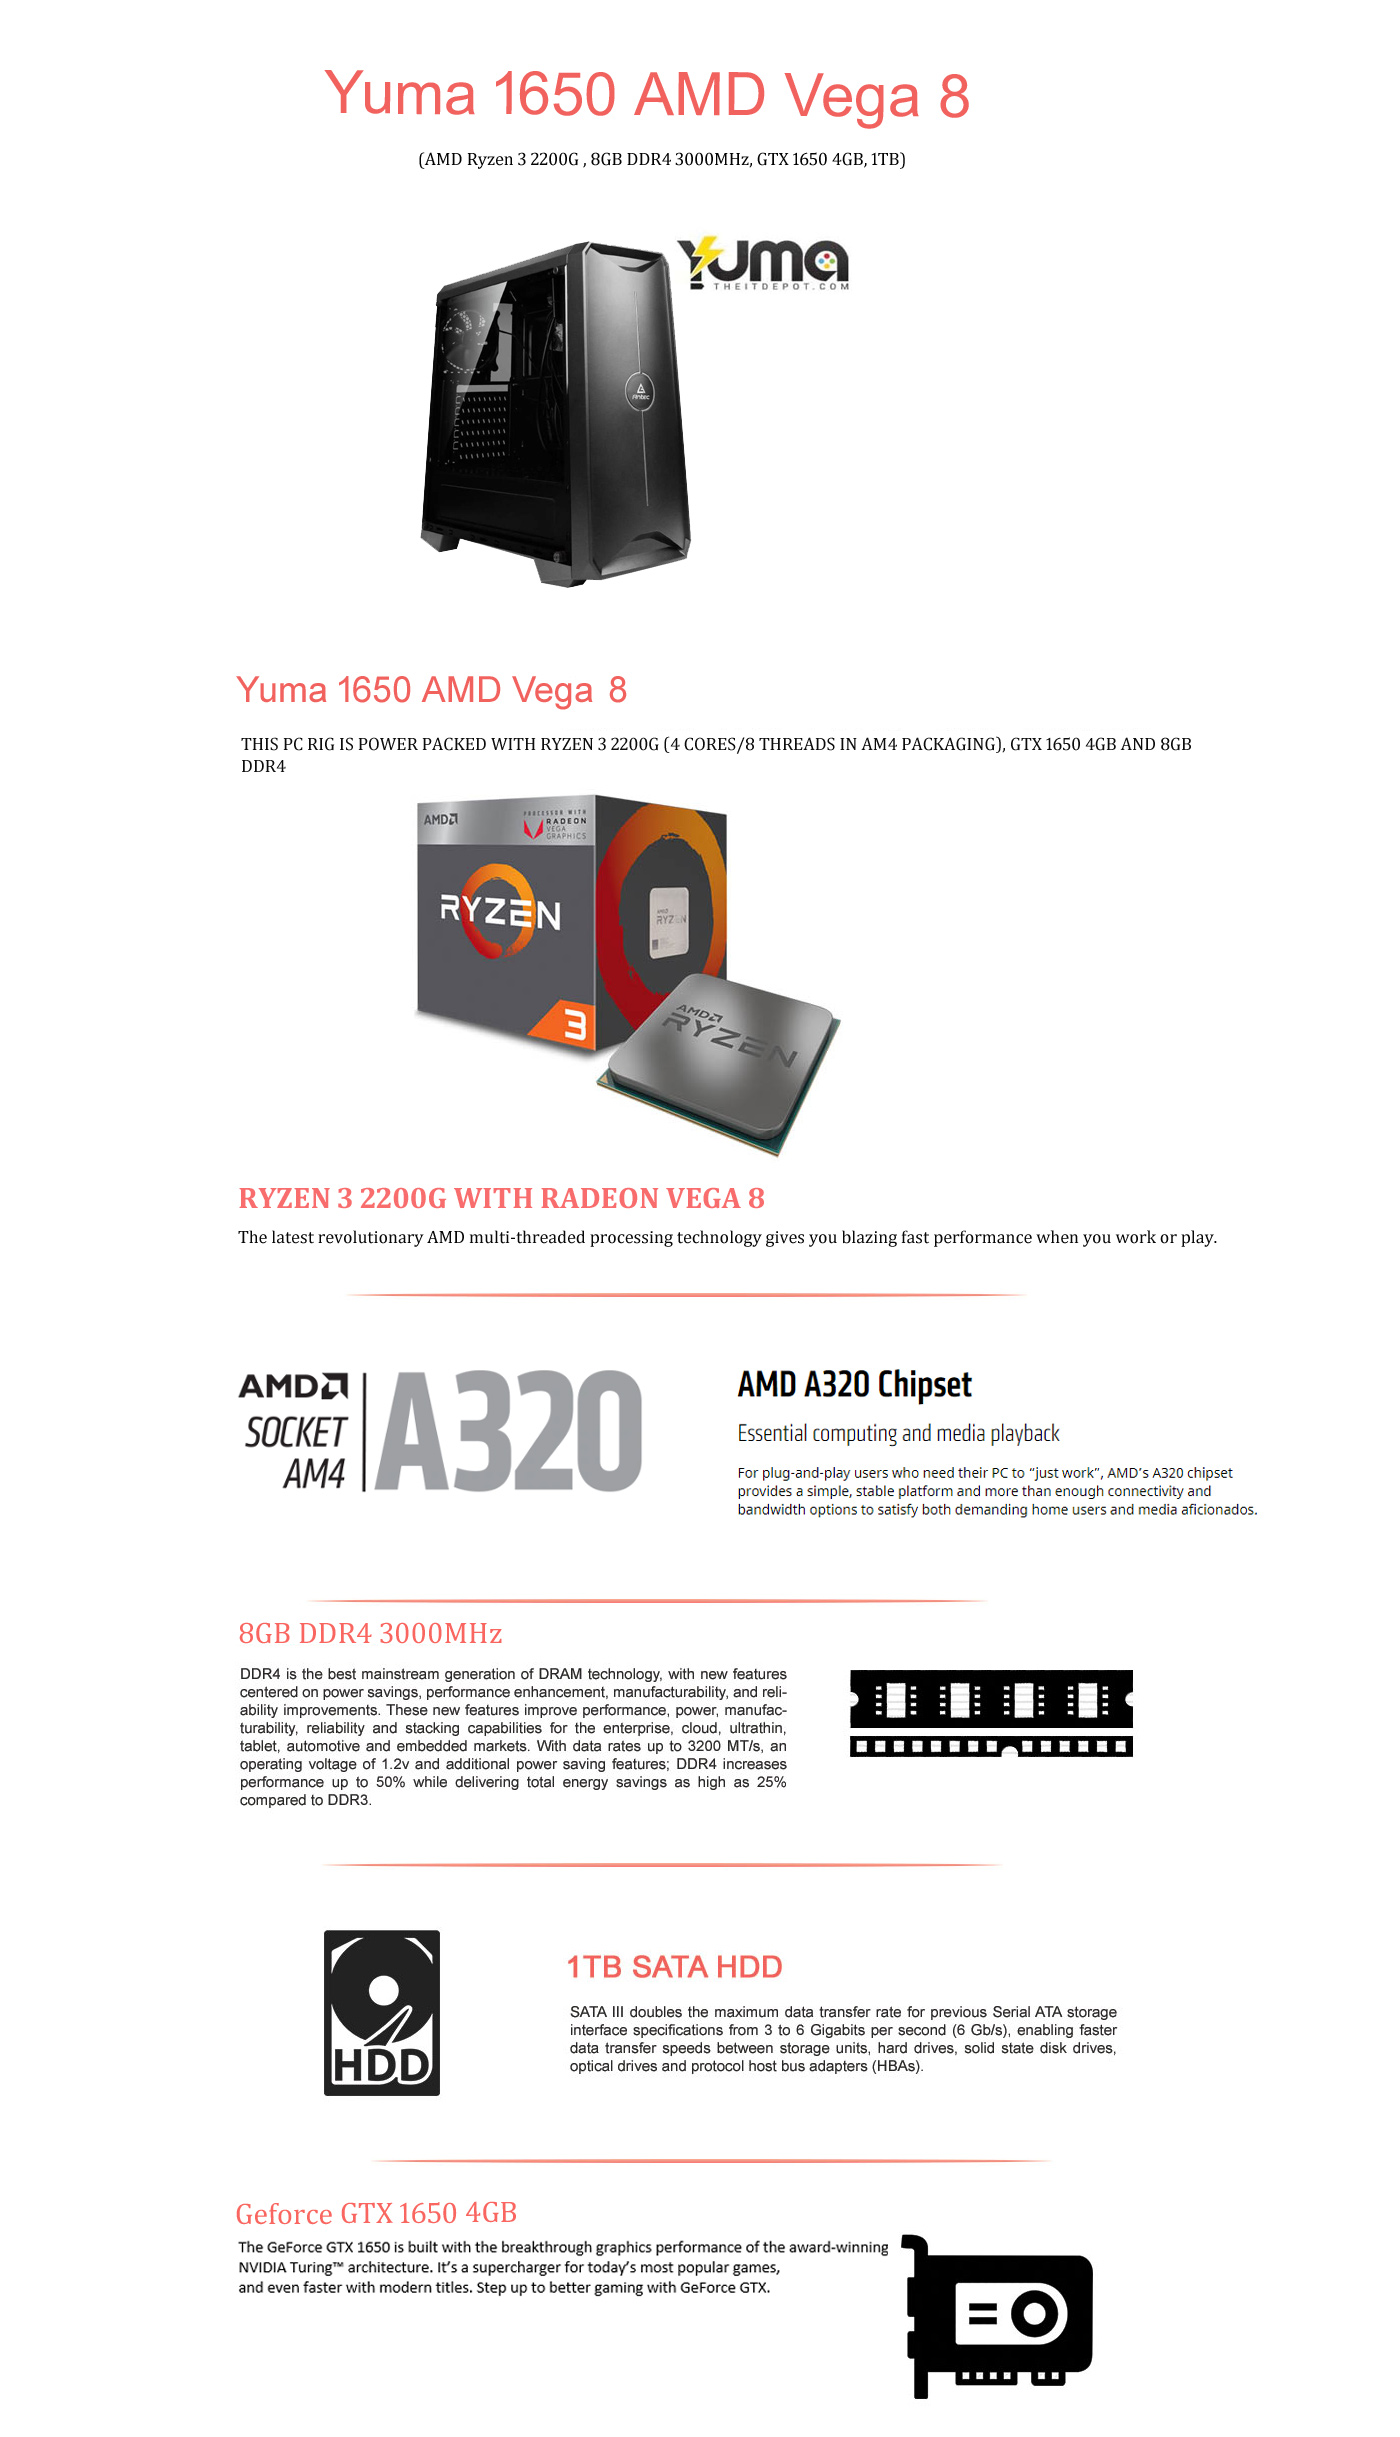  Buy Online Yuma 1650 AMD Vega 8 (AMD Ryzen 3 2200G, 8GB, 1TB, GTX 1650 4GB)